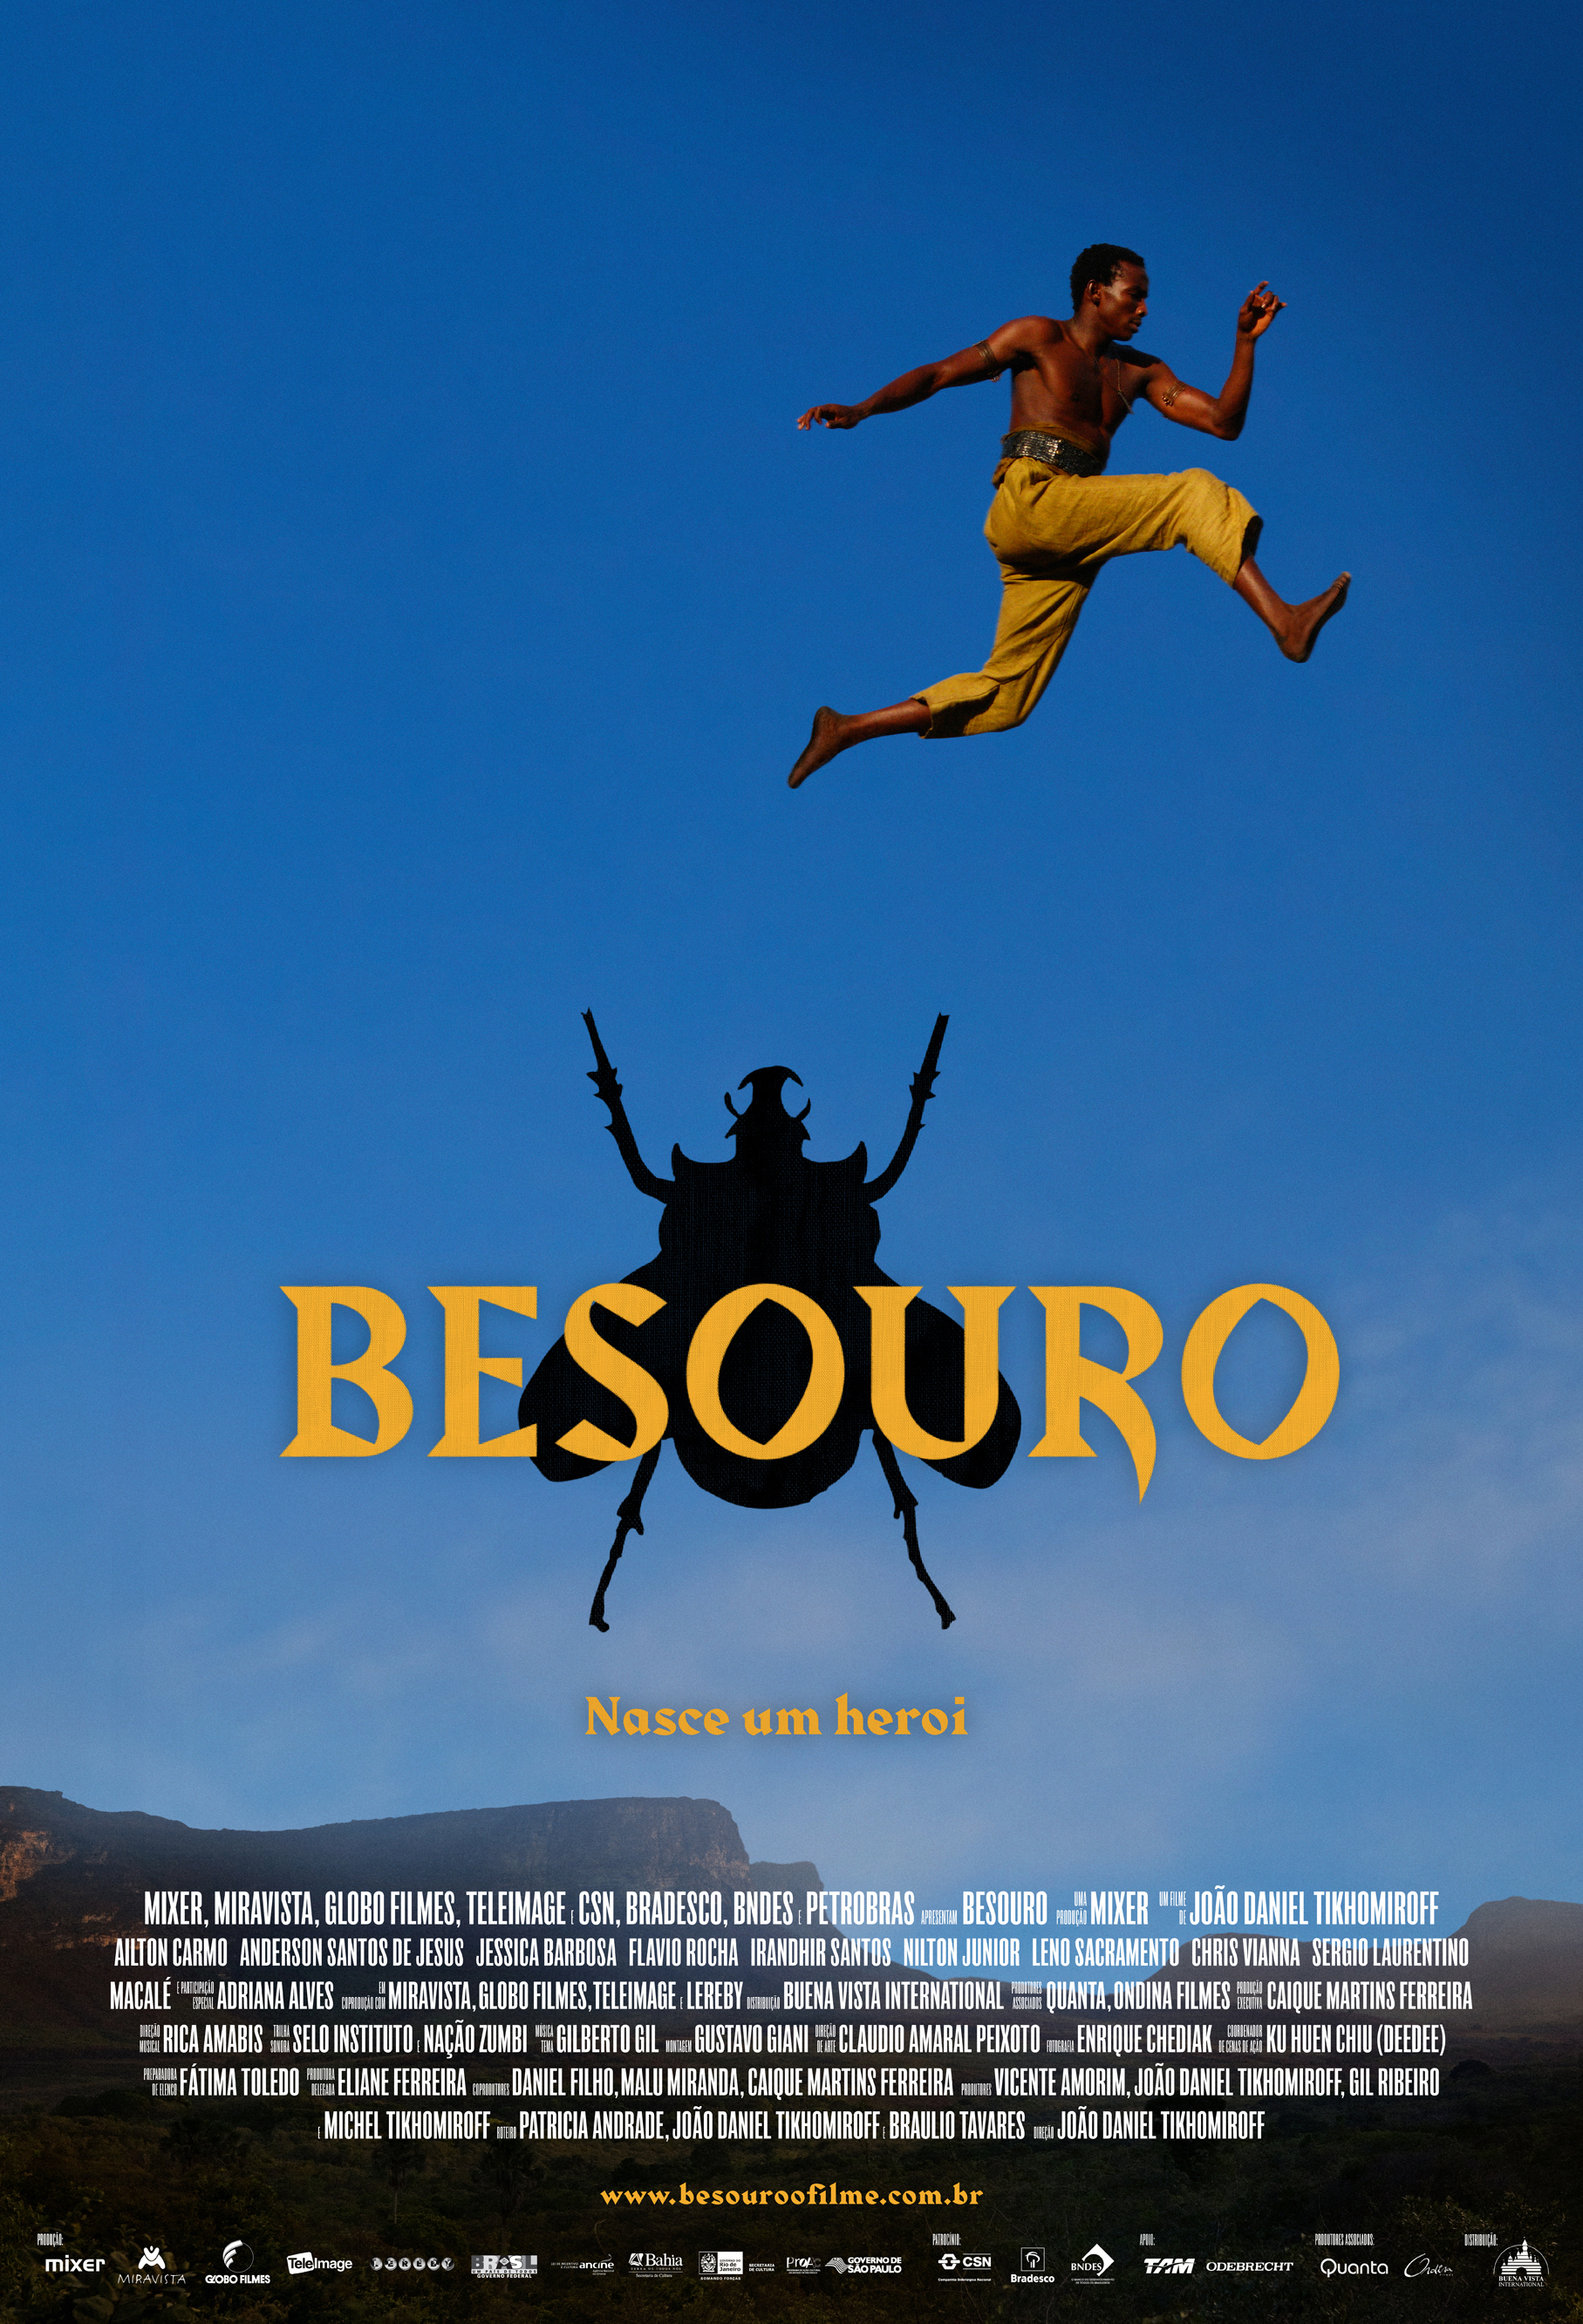 Besouro movie